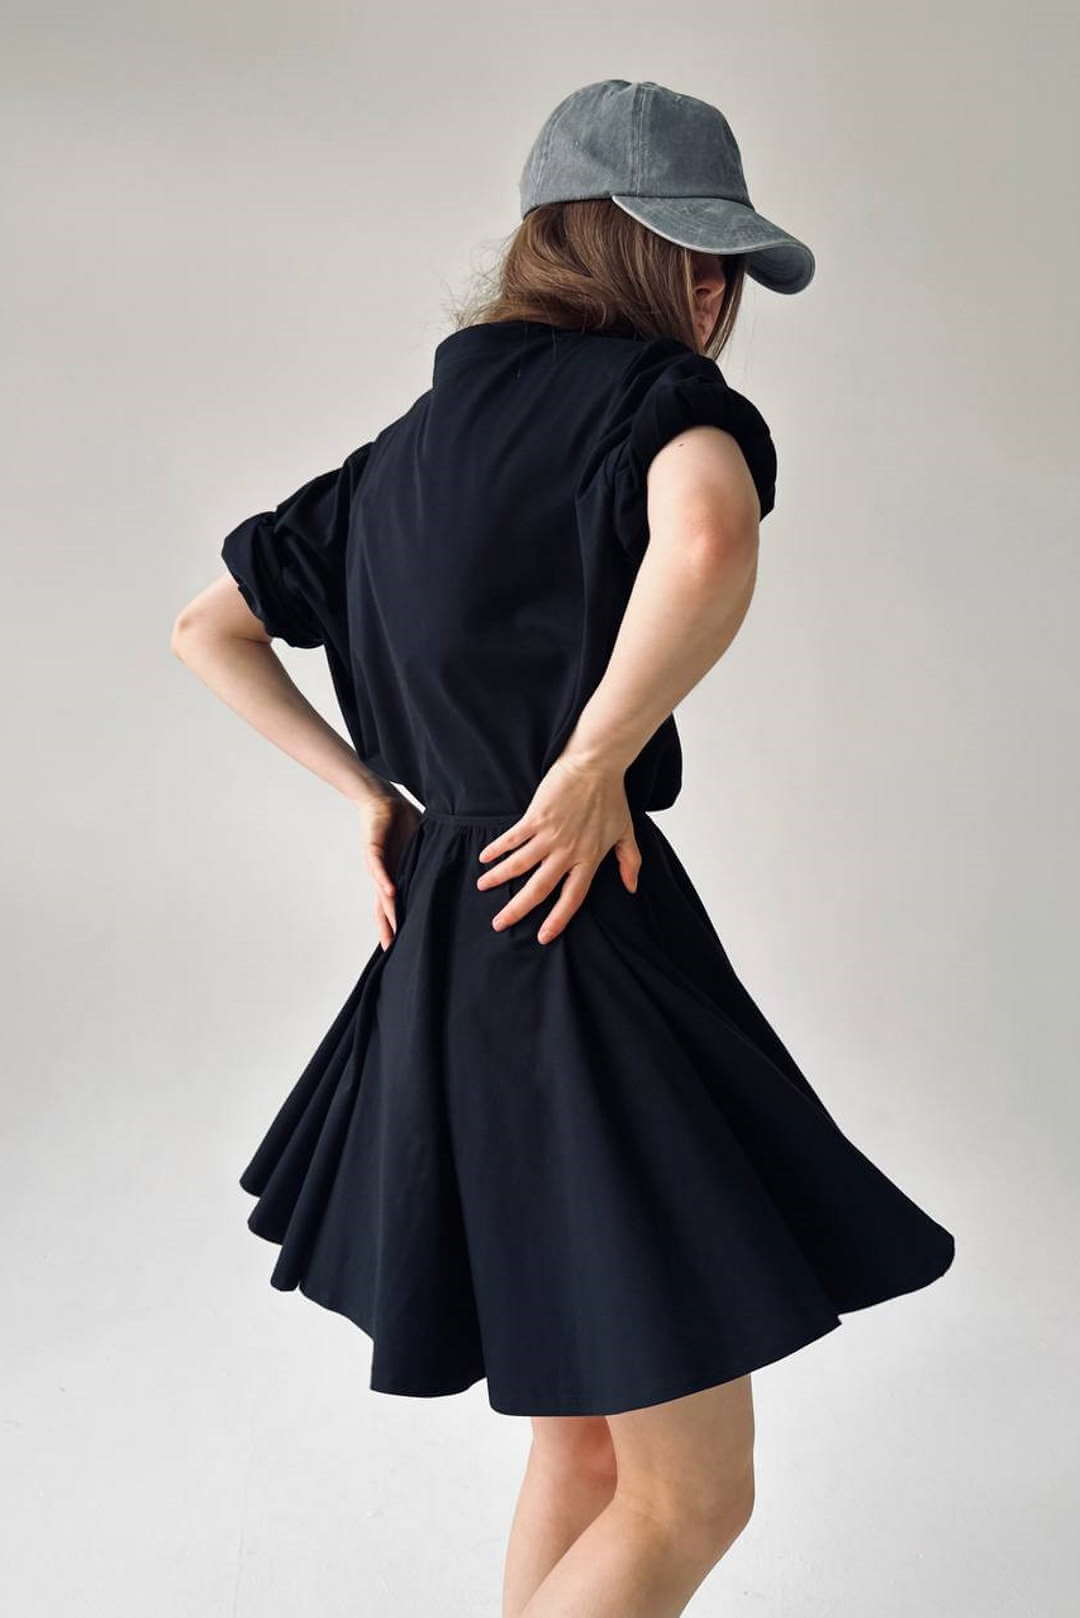 Мини-юбка черная от интернет-магазина PFG STUDIO